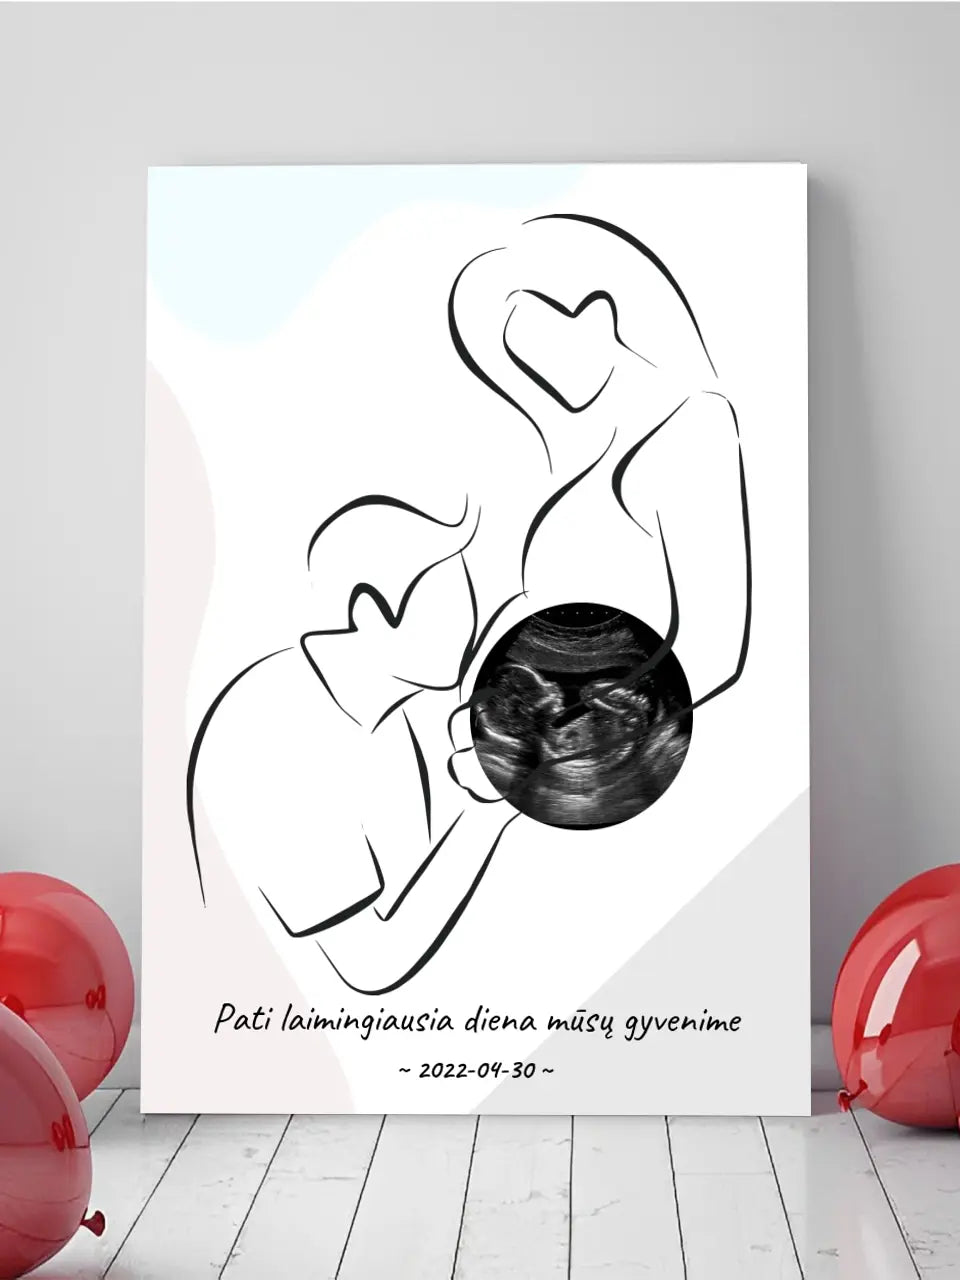 Personalizuotas nėščiųjų echoskopijos tyrimo spaudinys ant drobės, su jūsų nuotrauką ir linijine iliustracija